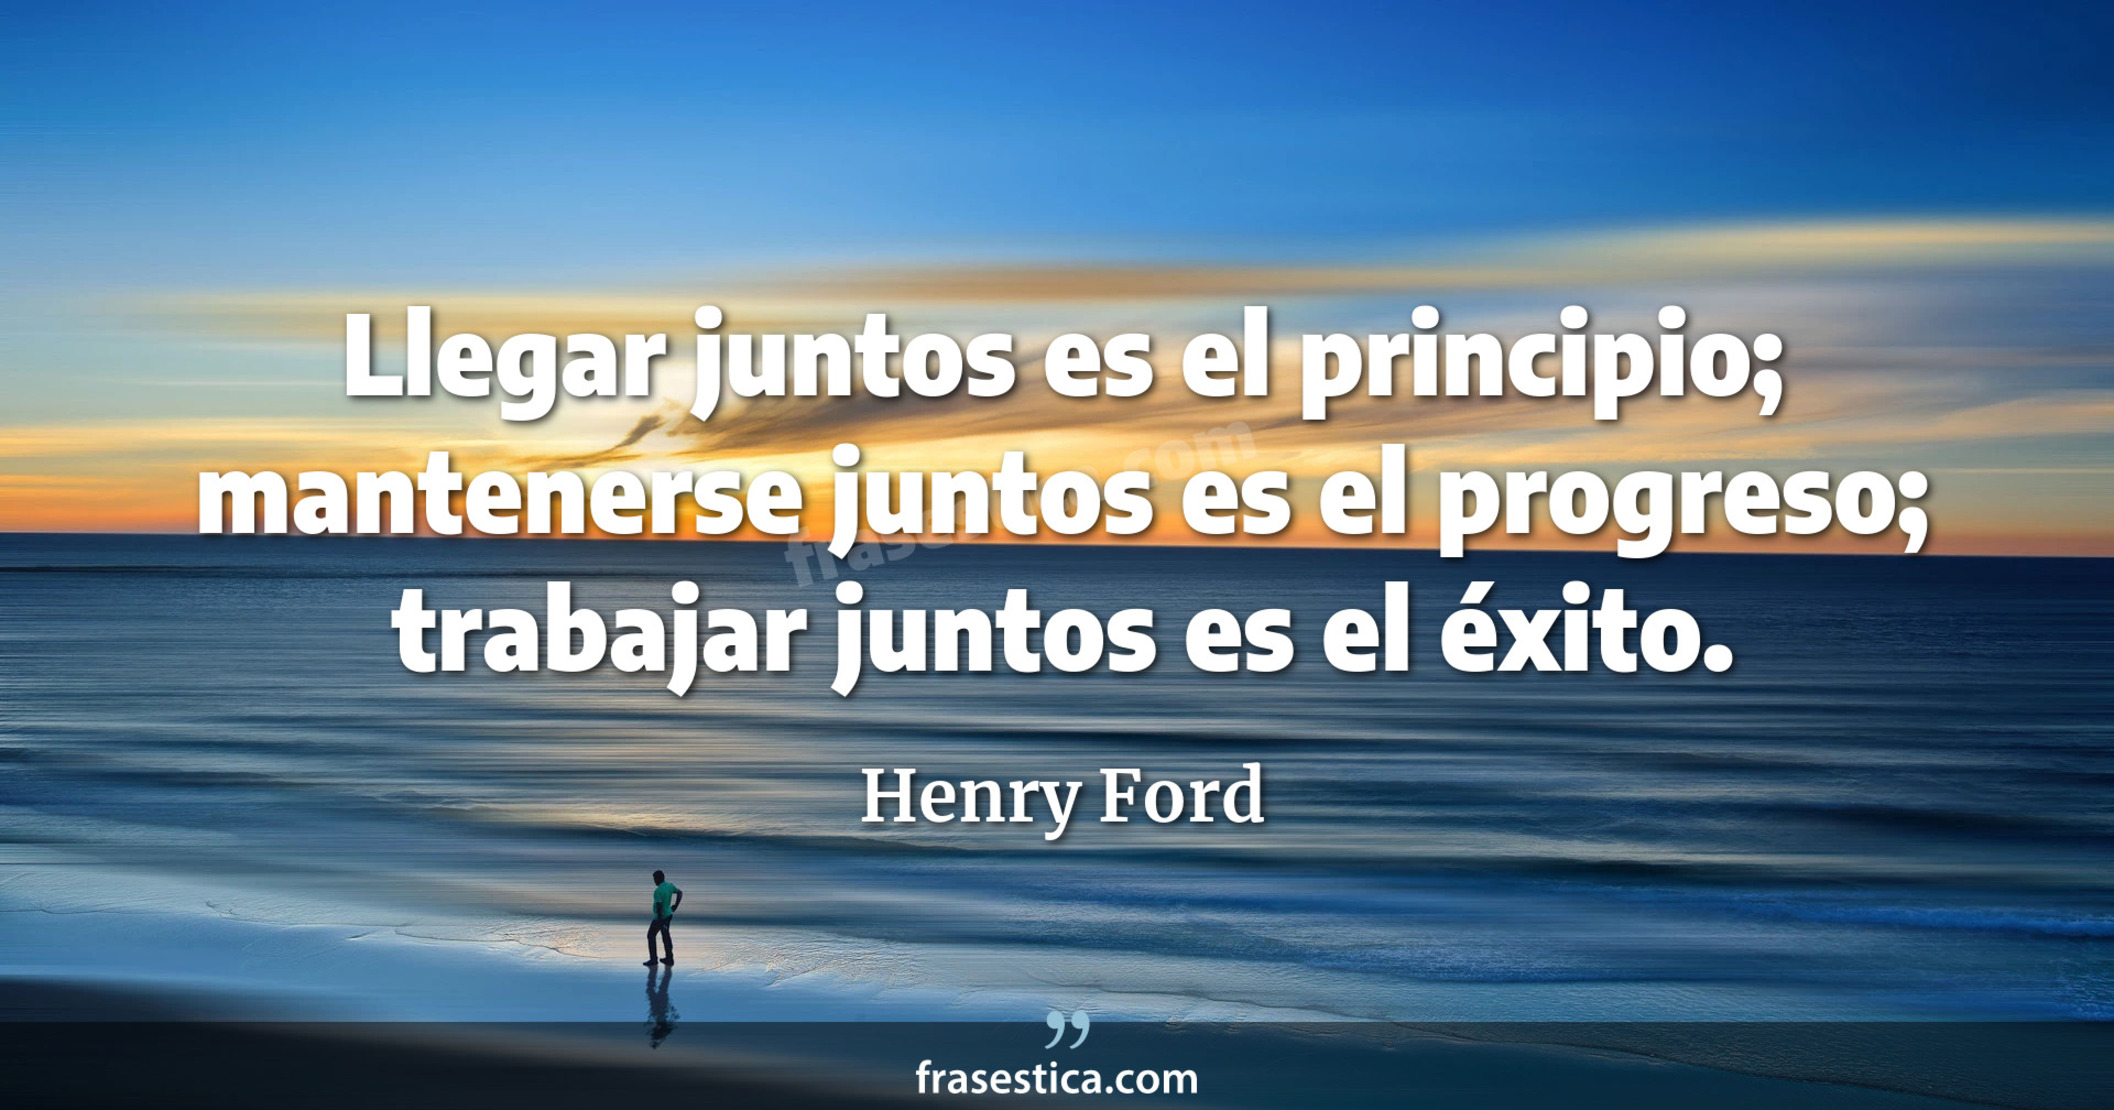 Llegar juntos es el principio; mantenerse juntos es el progreso; trabajar juntos es el éxito. - Henry Ford